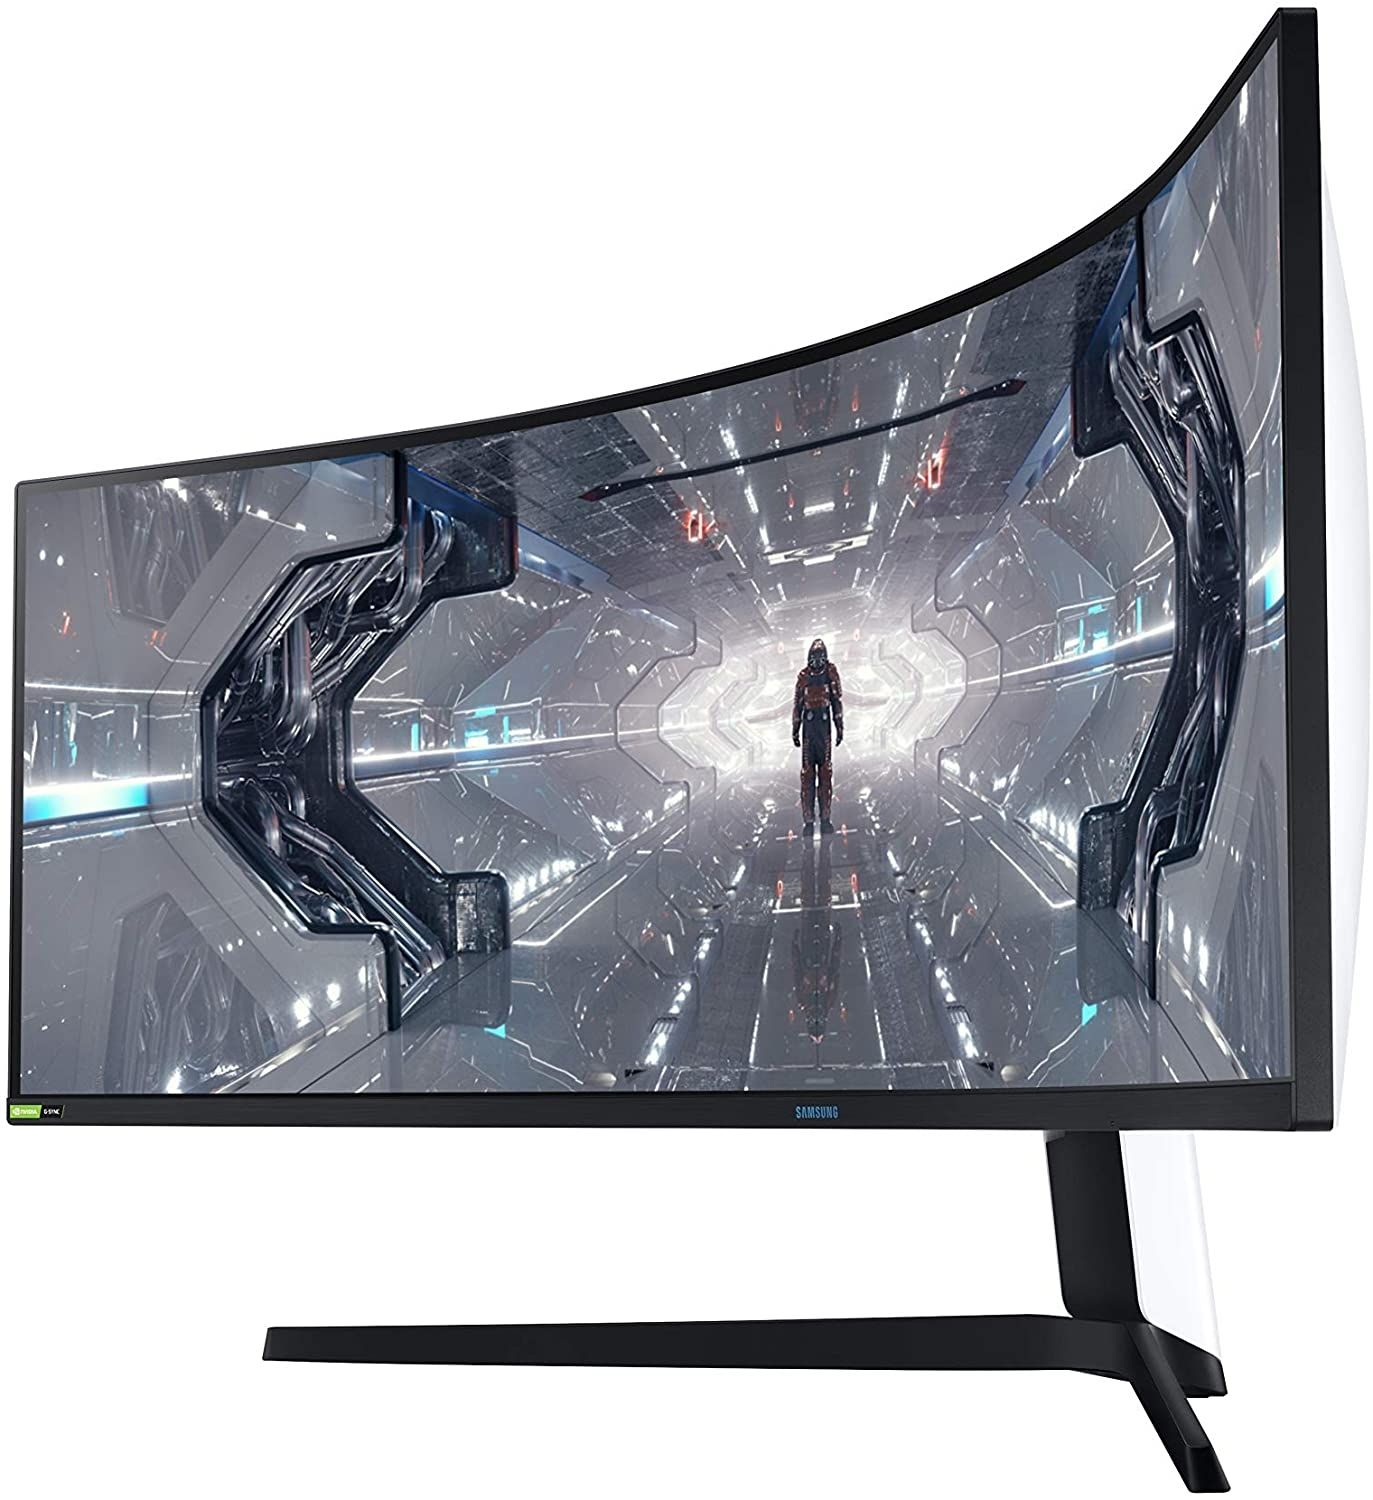 samsung odyssey g9 1000r curve gaming monitor - Dovresti passare a un monitor curvo 1000R e quale dovresti acquistare?